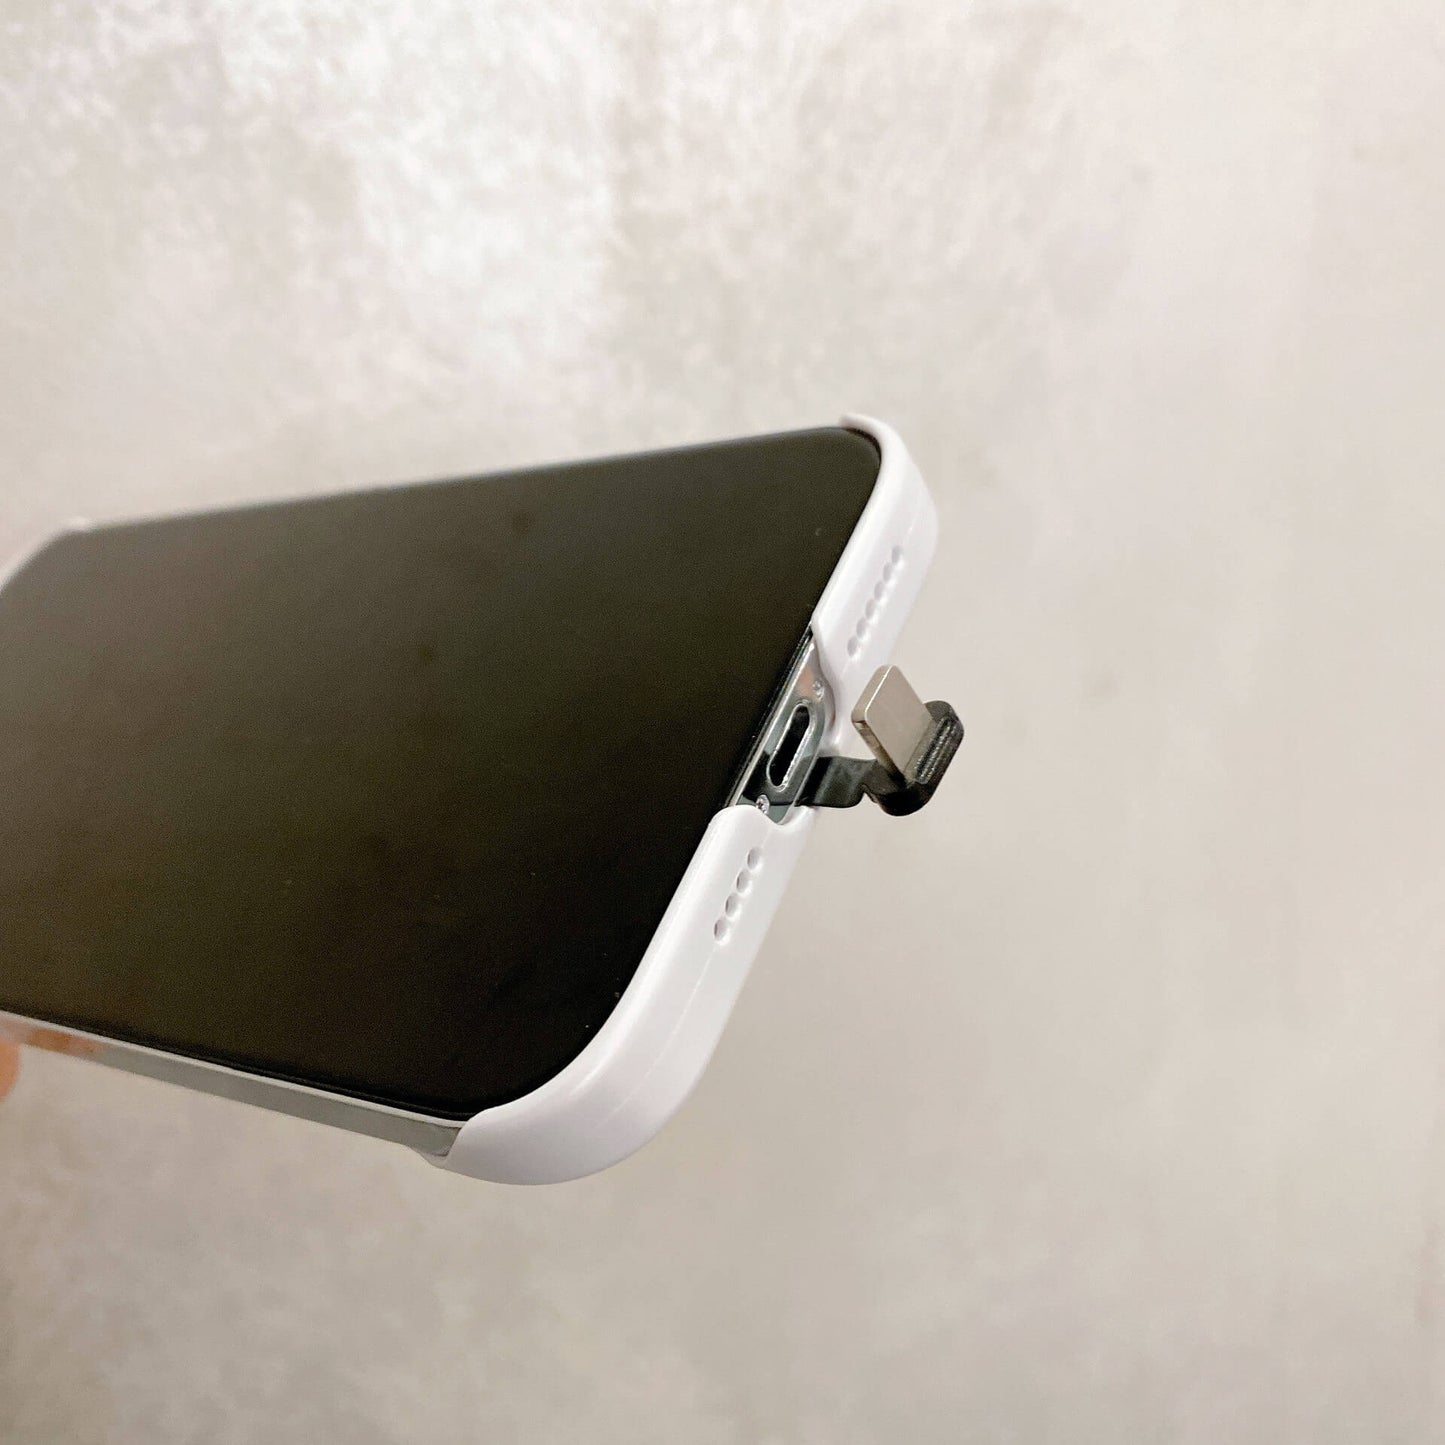 Caja del teléfono de la luz de Selfie para el iPhone